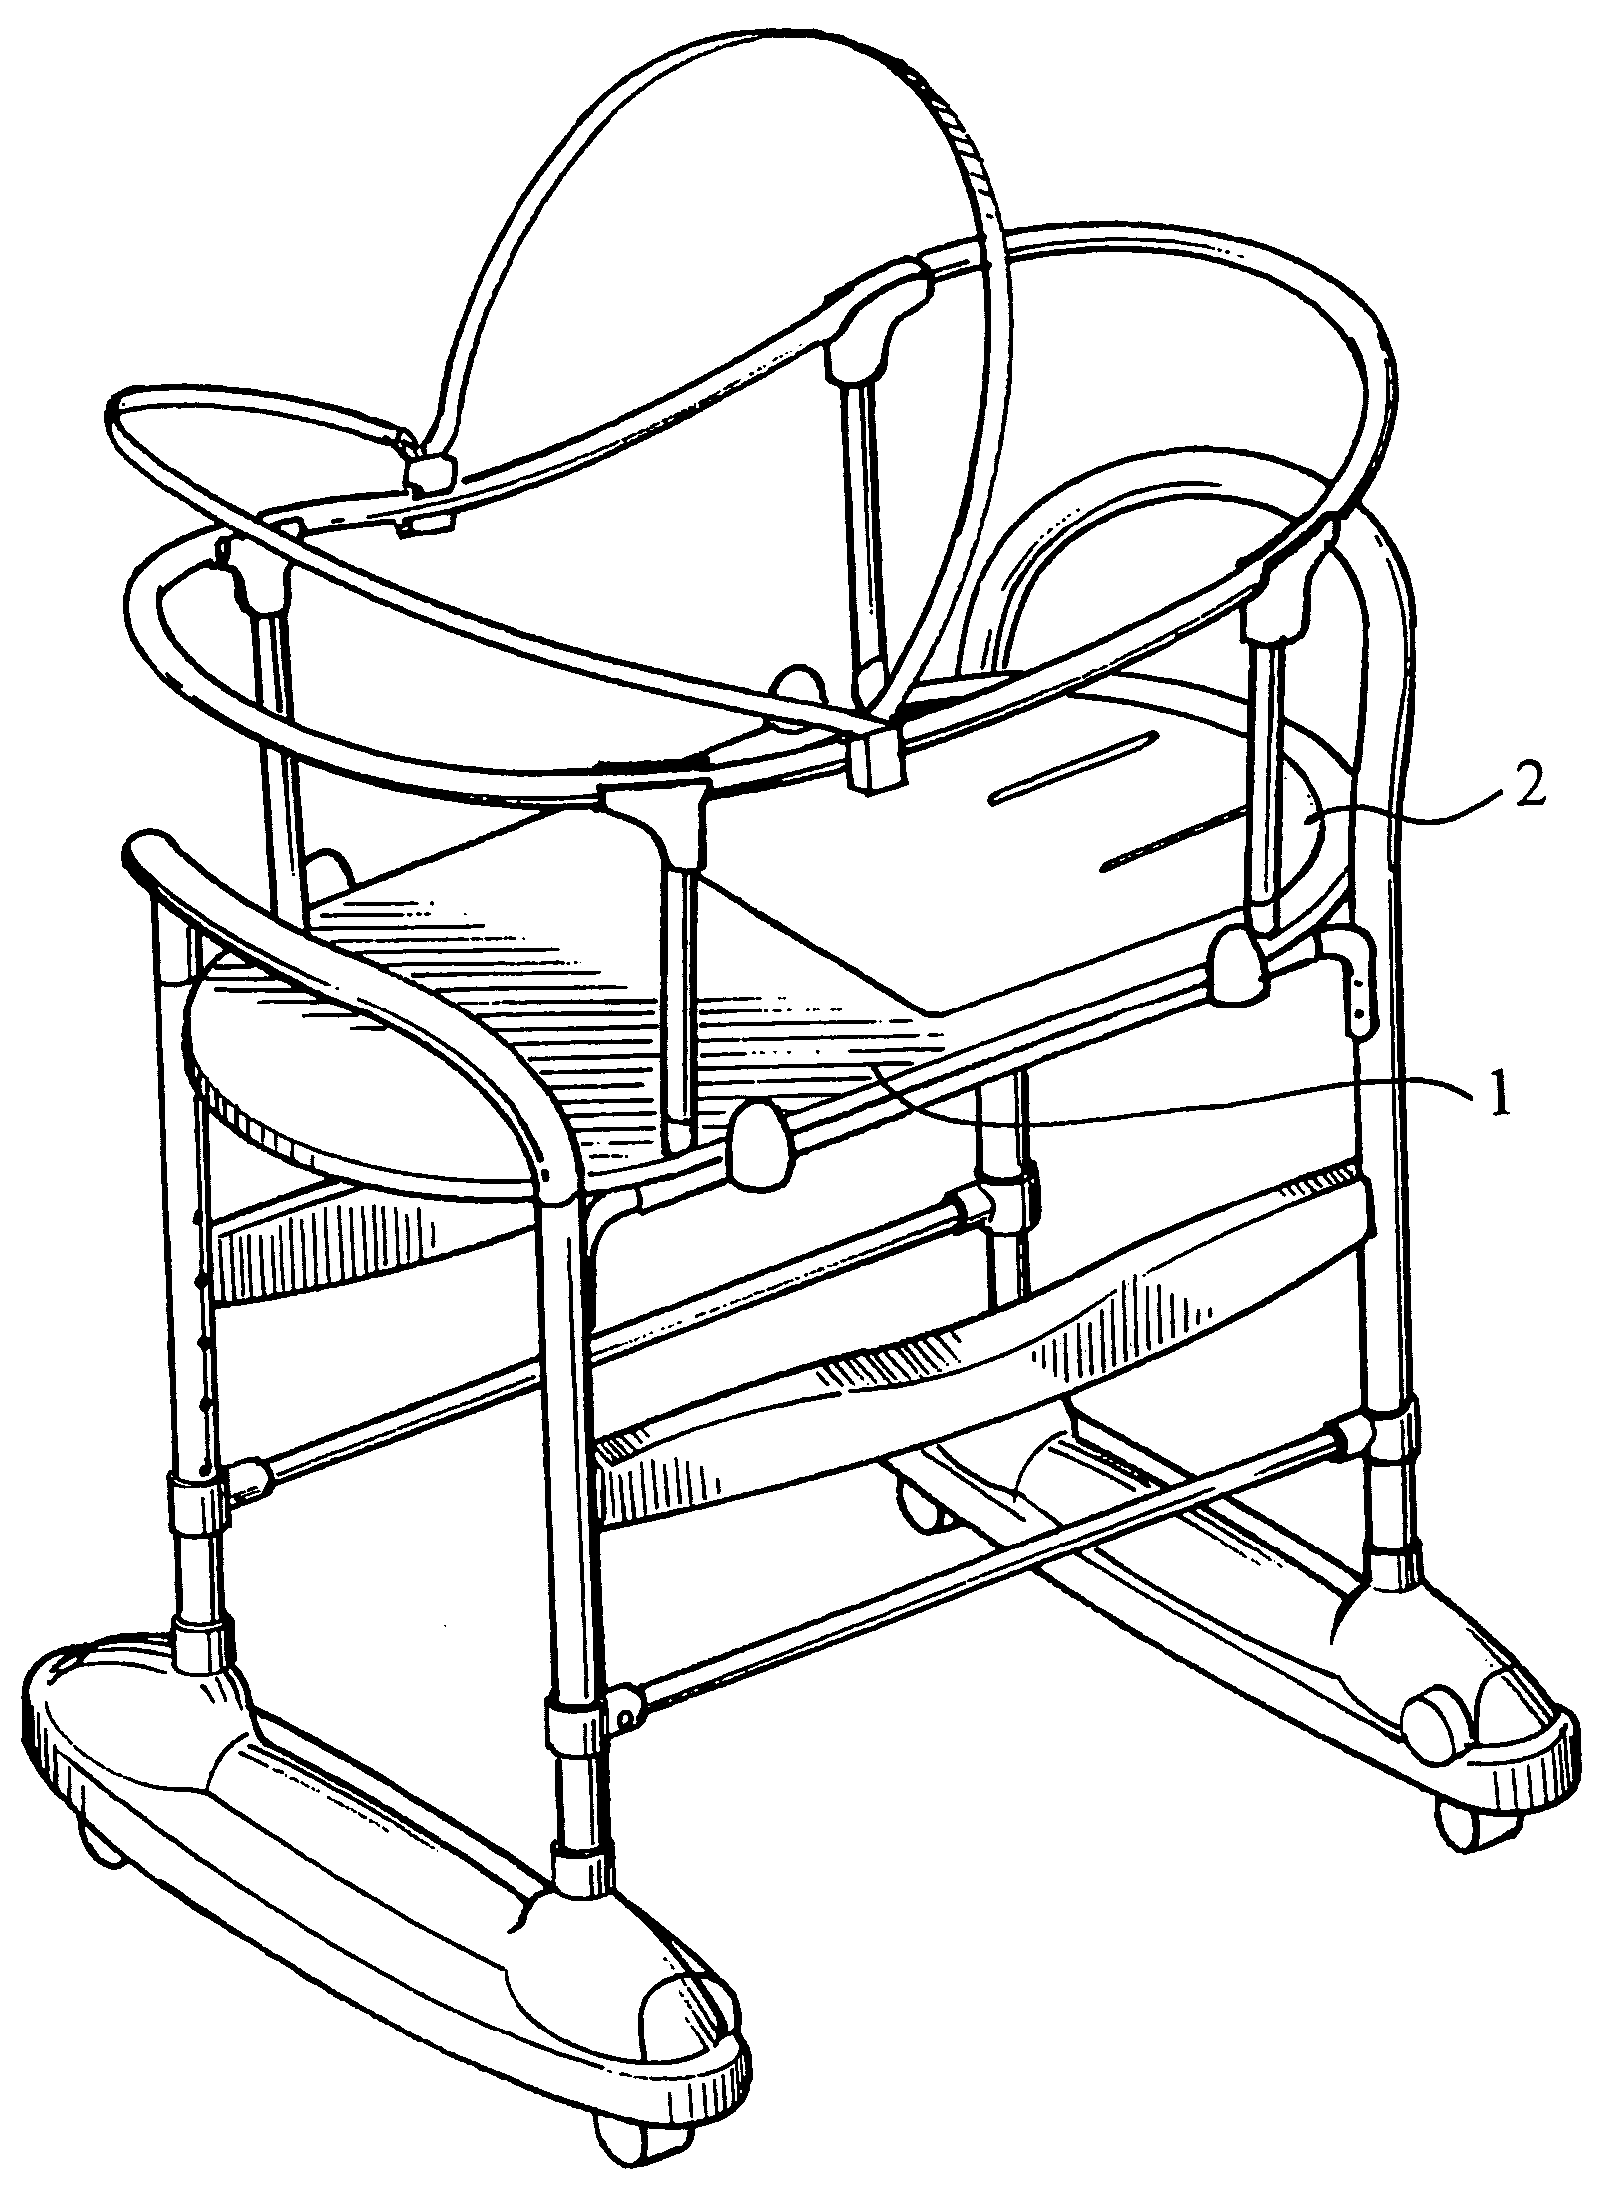 Inclination adjusting means for backrest of bassinet